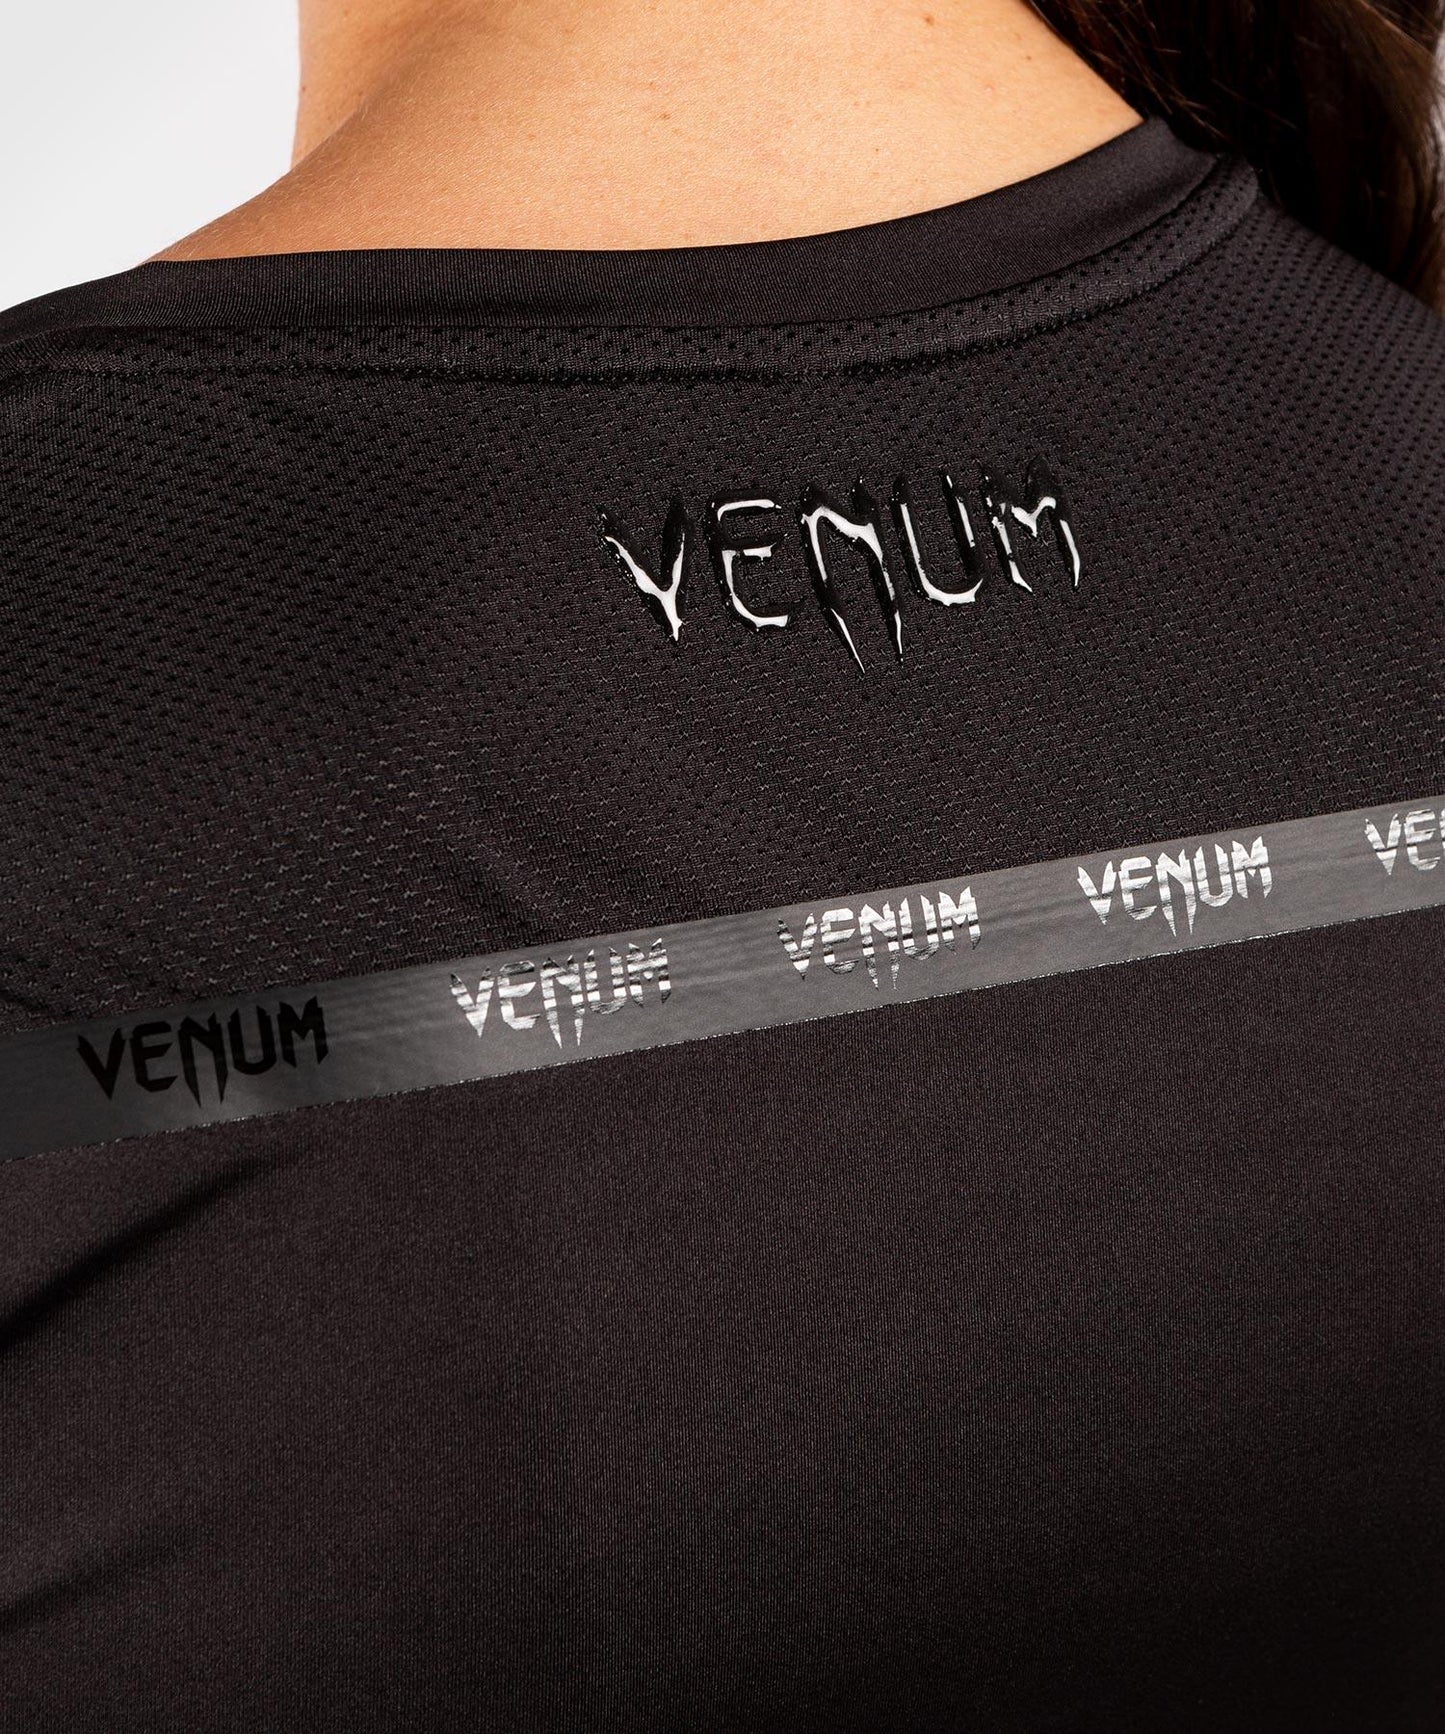 Venum G-Fit Dry-Tech T-shirt - For Women - Black/Black Picture 6